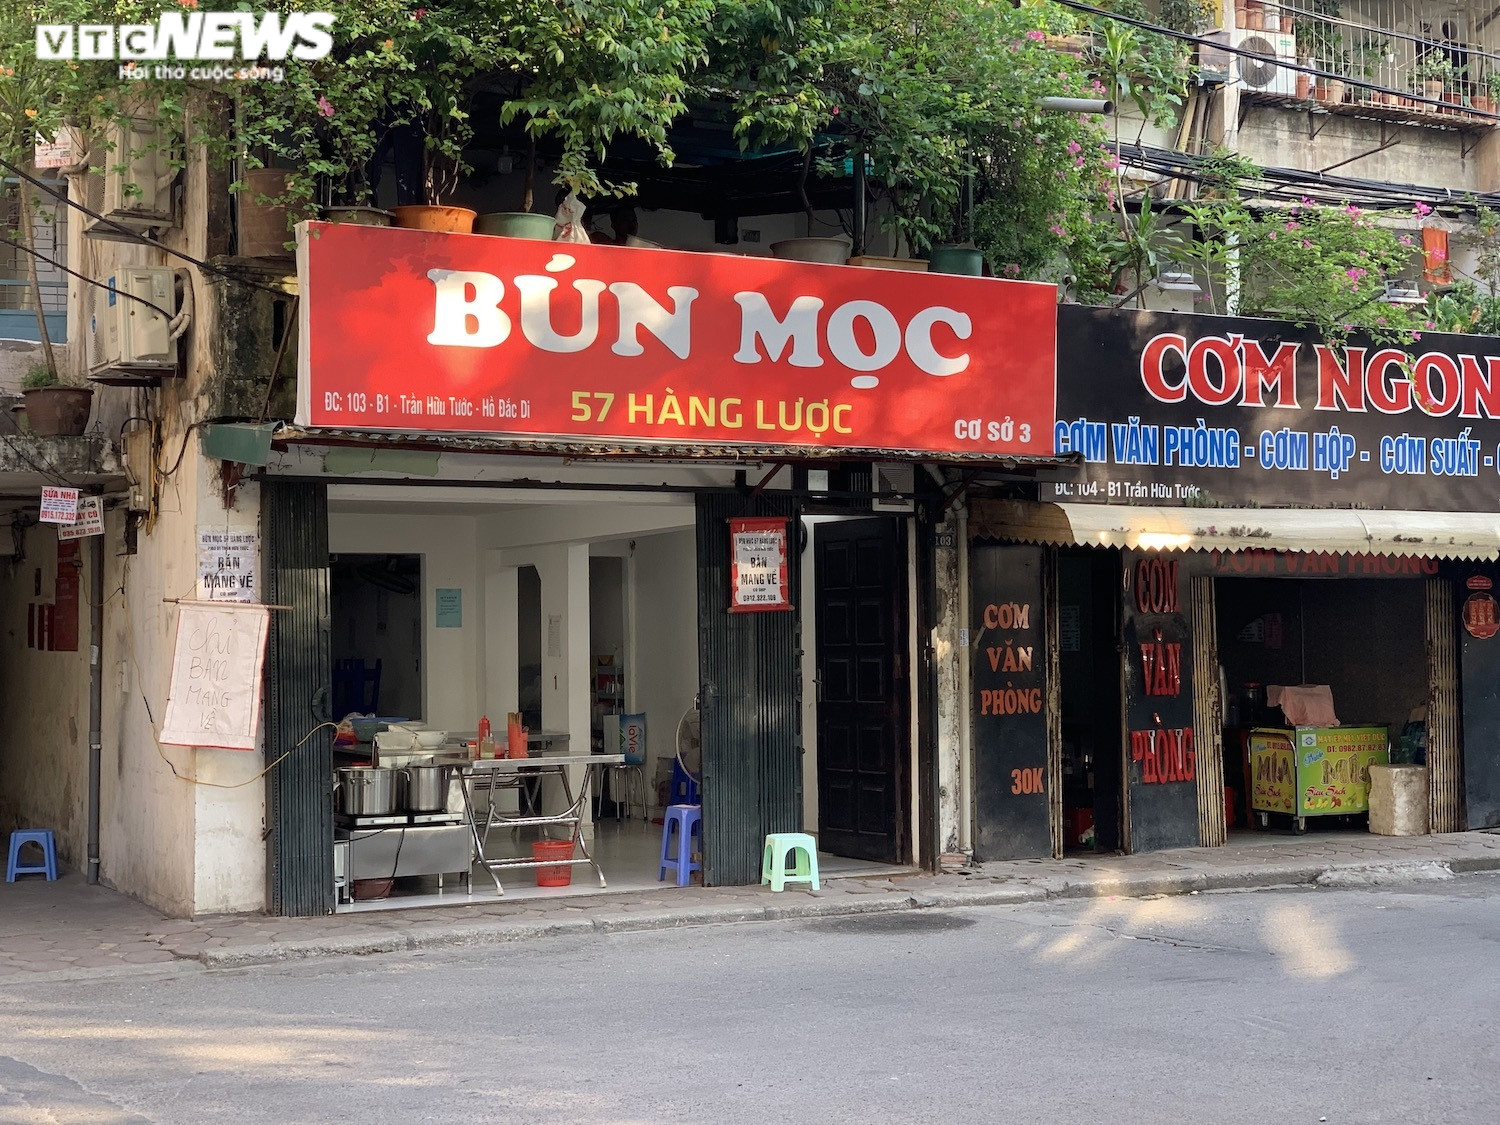 Phòng COVID-19, hàng quán ăn sáng ở Hà Nội nơi đóng cửa, nơi chỉ bán mang về  - 8